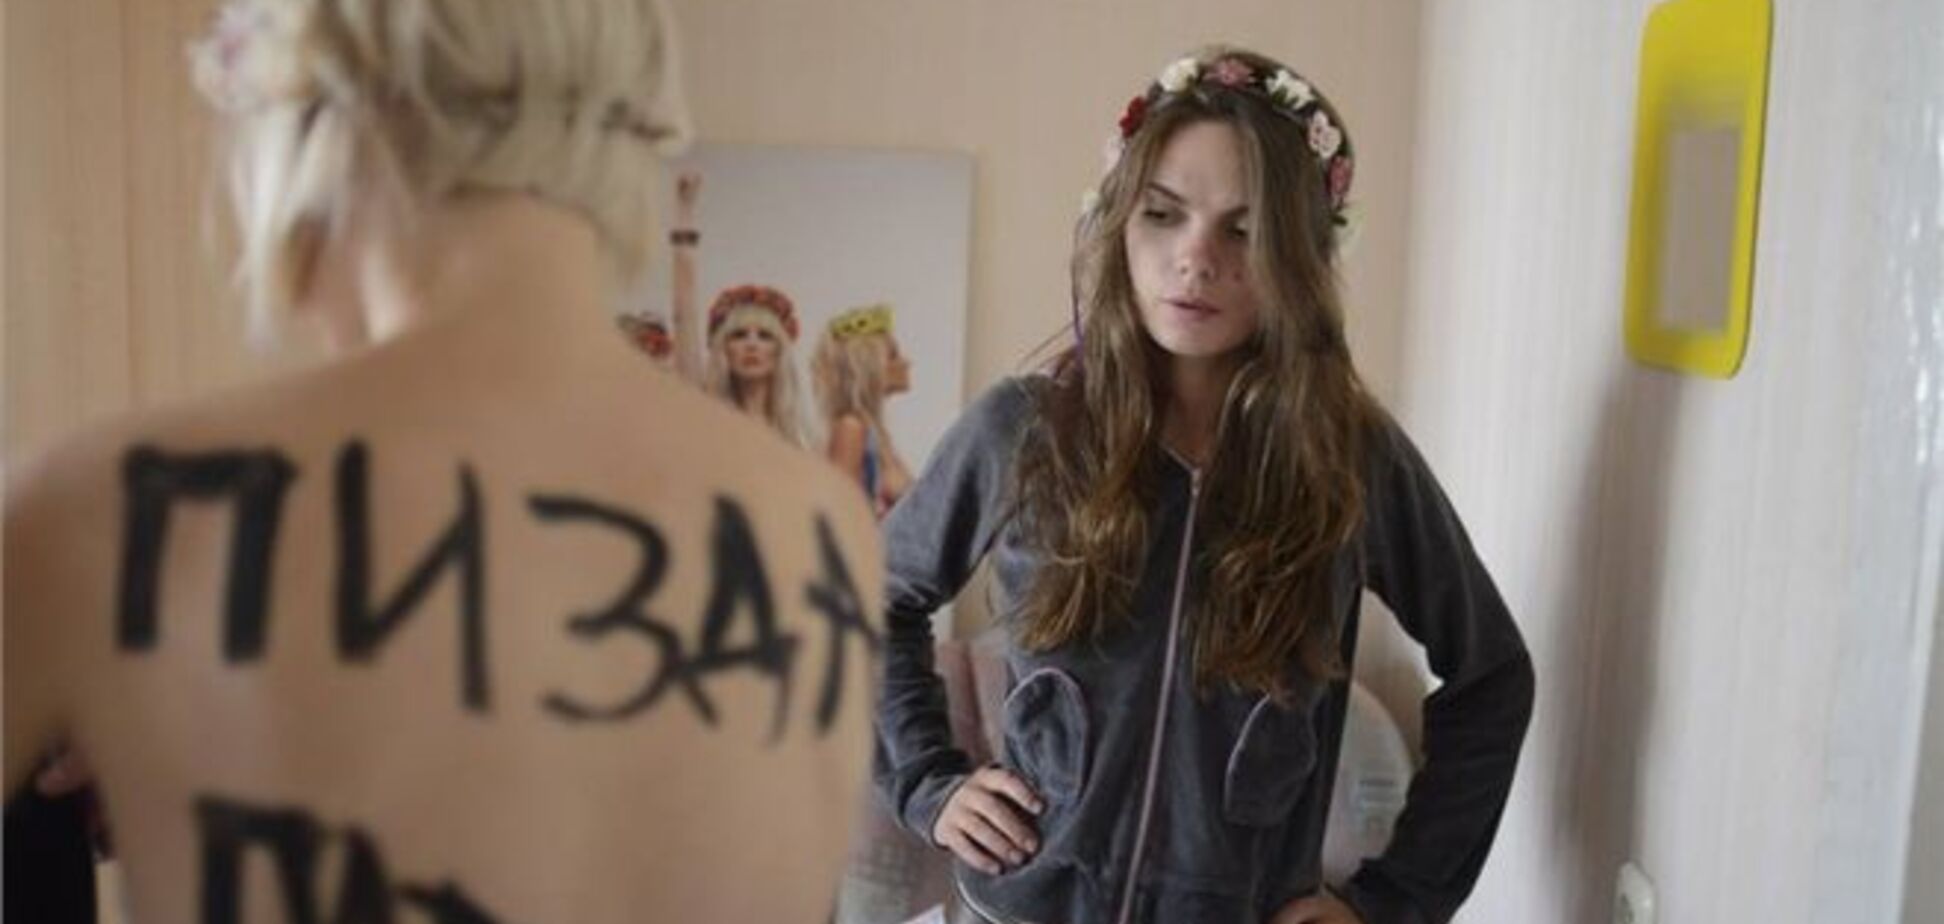 Соратниця Ляшко виклала фото підготовки FEMEN до антипутінської акції